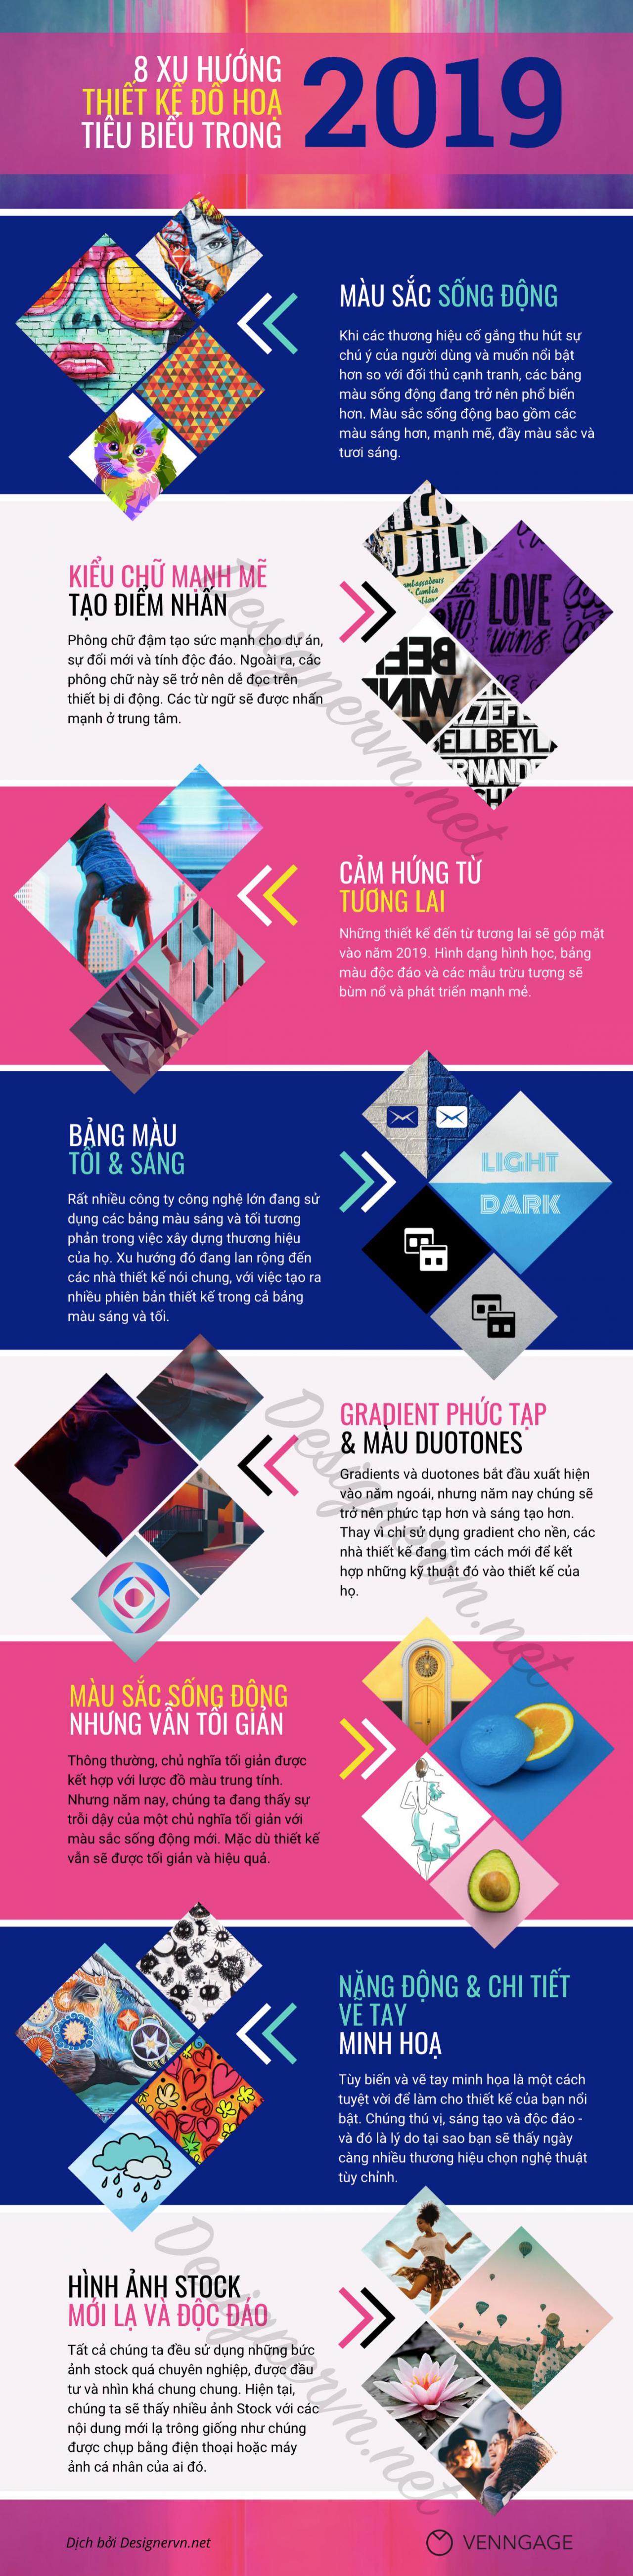 [Infographic] Dự đoán 8 Xu hướng thiết kế đồ hoạ tiêu biểu trong năm 2019